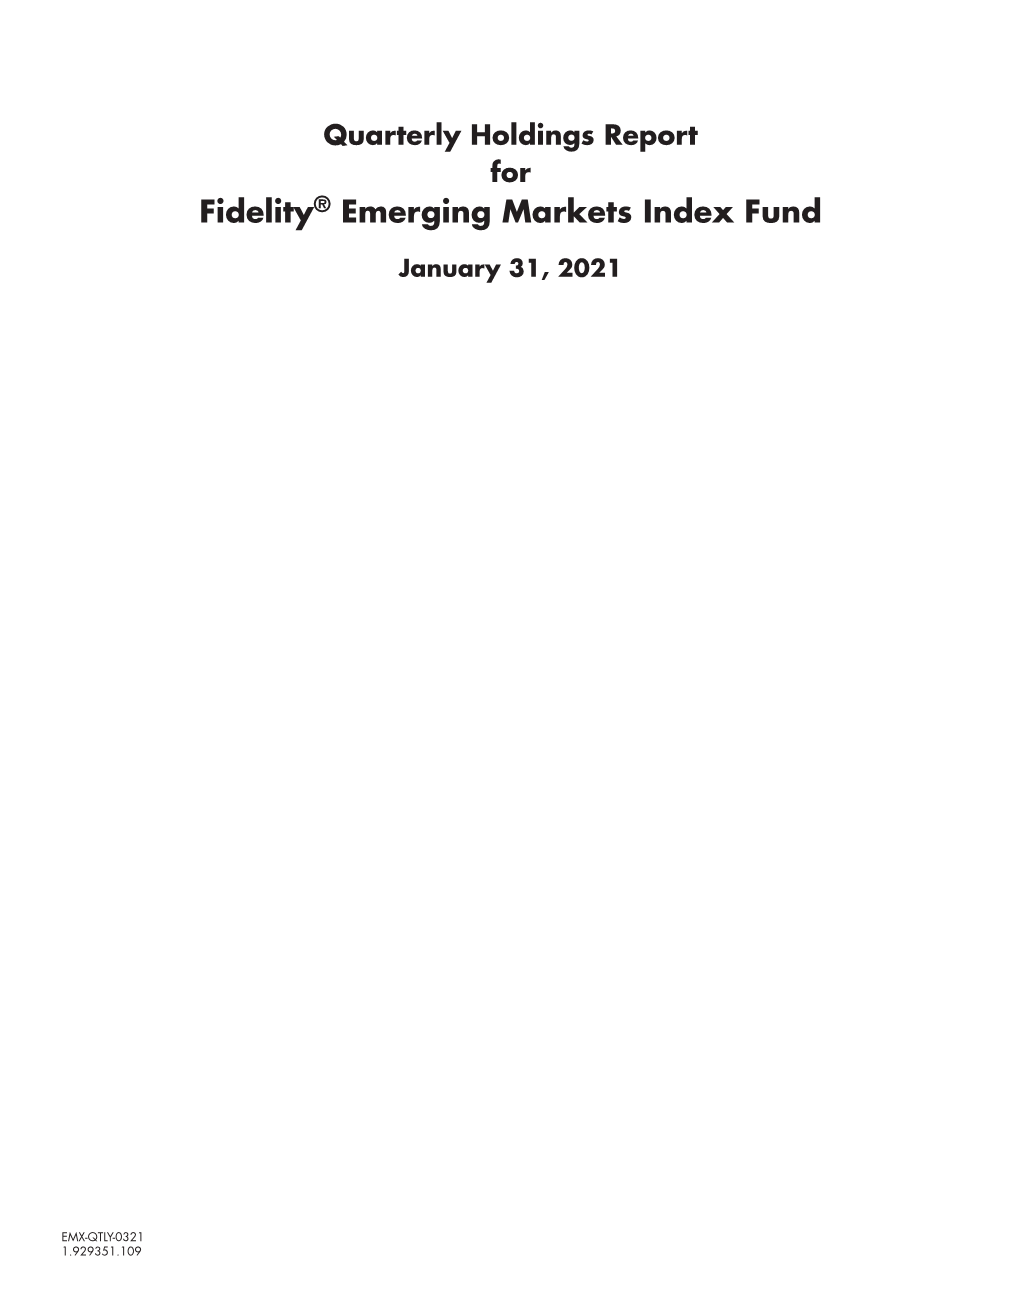 Fidelity® Emerging Markets Index Fund